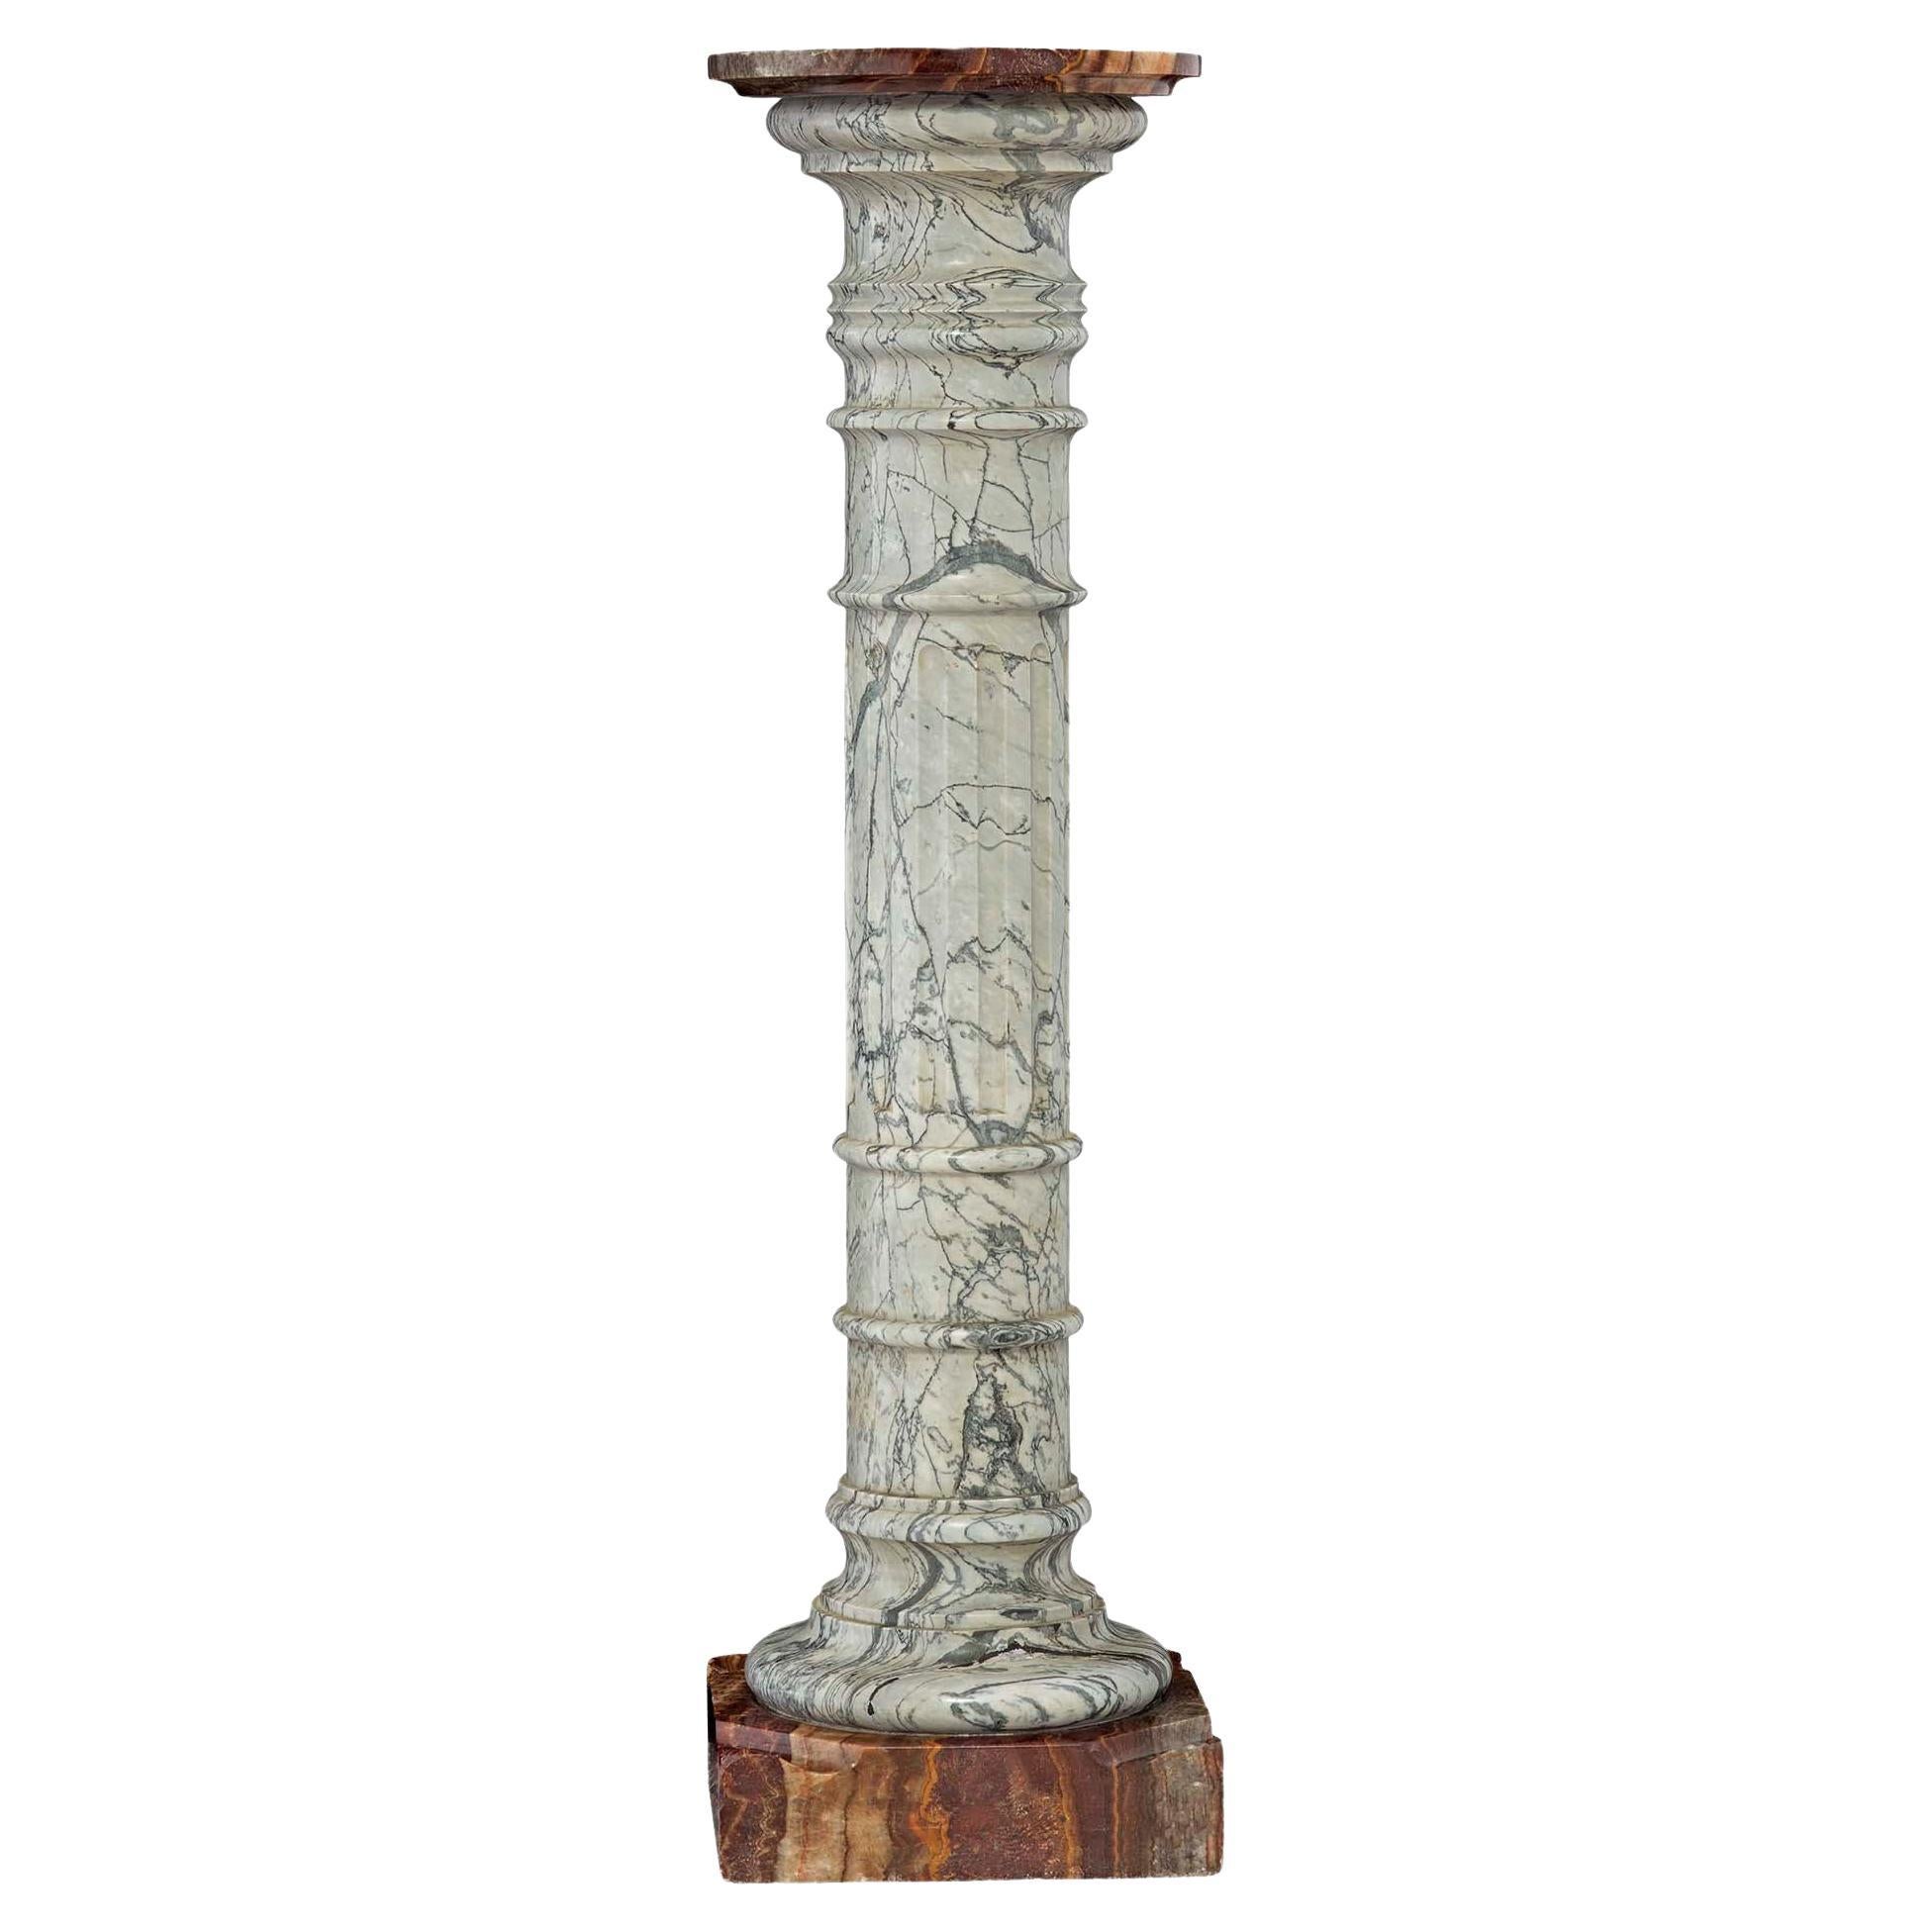 Columne de piédestal néoclassique italienne du 19ème siècle en marbre et onyx